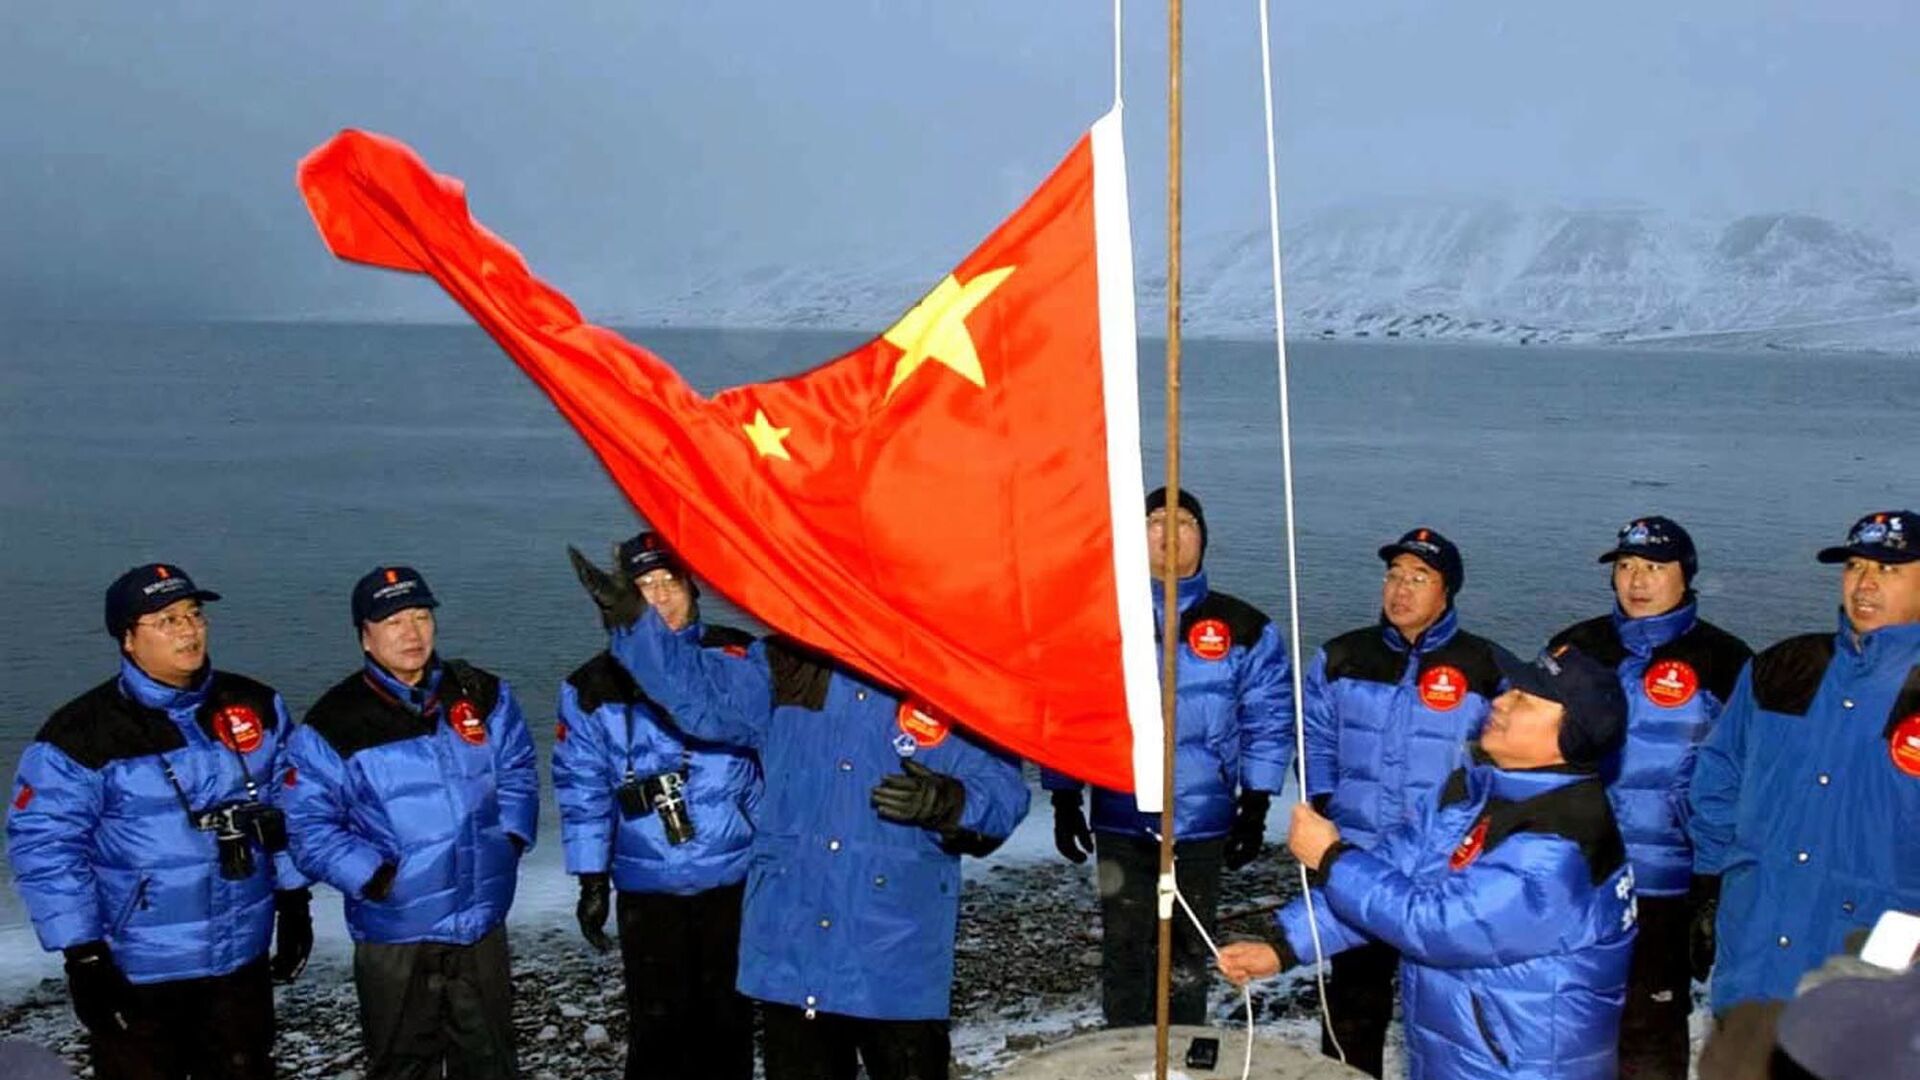 أعضاء بعثة صينية إلى القطب الشمالي يرفعون علم الصين في لونغييربين في جزيرة سبيتسبيرغن / سفالبارد، شمال النرويج، 31 أكتوبر 2001 - سبوتنيك عربي, 1920, 28.04.2022